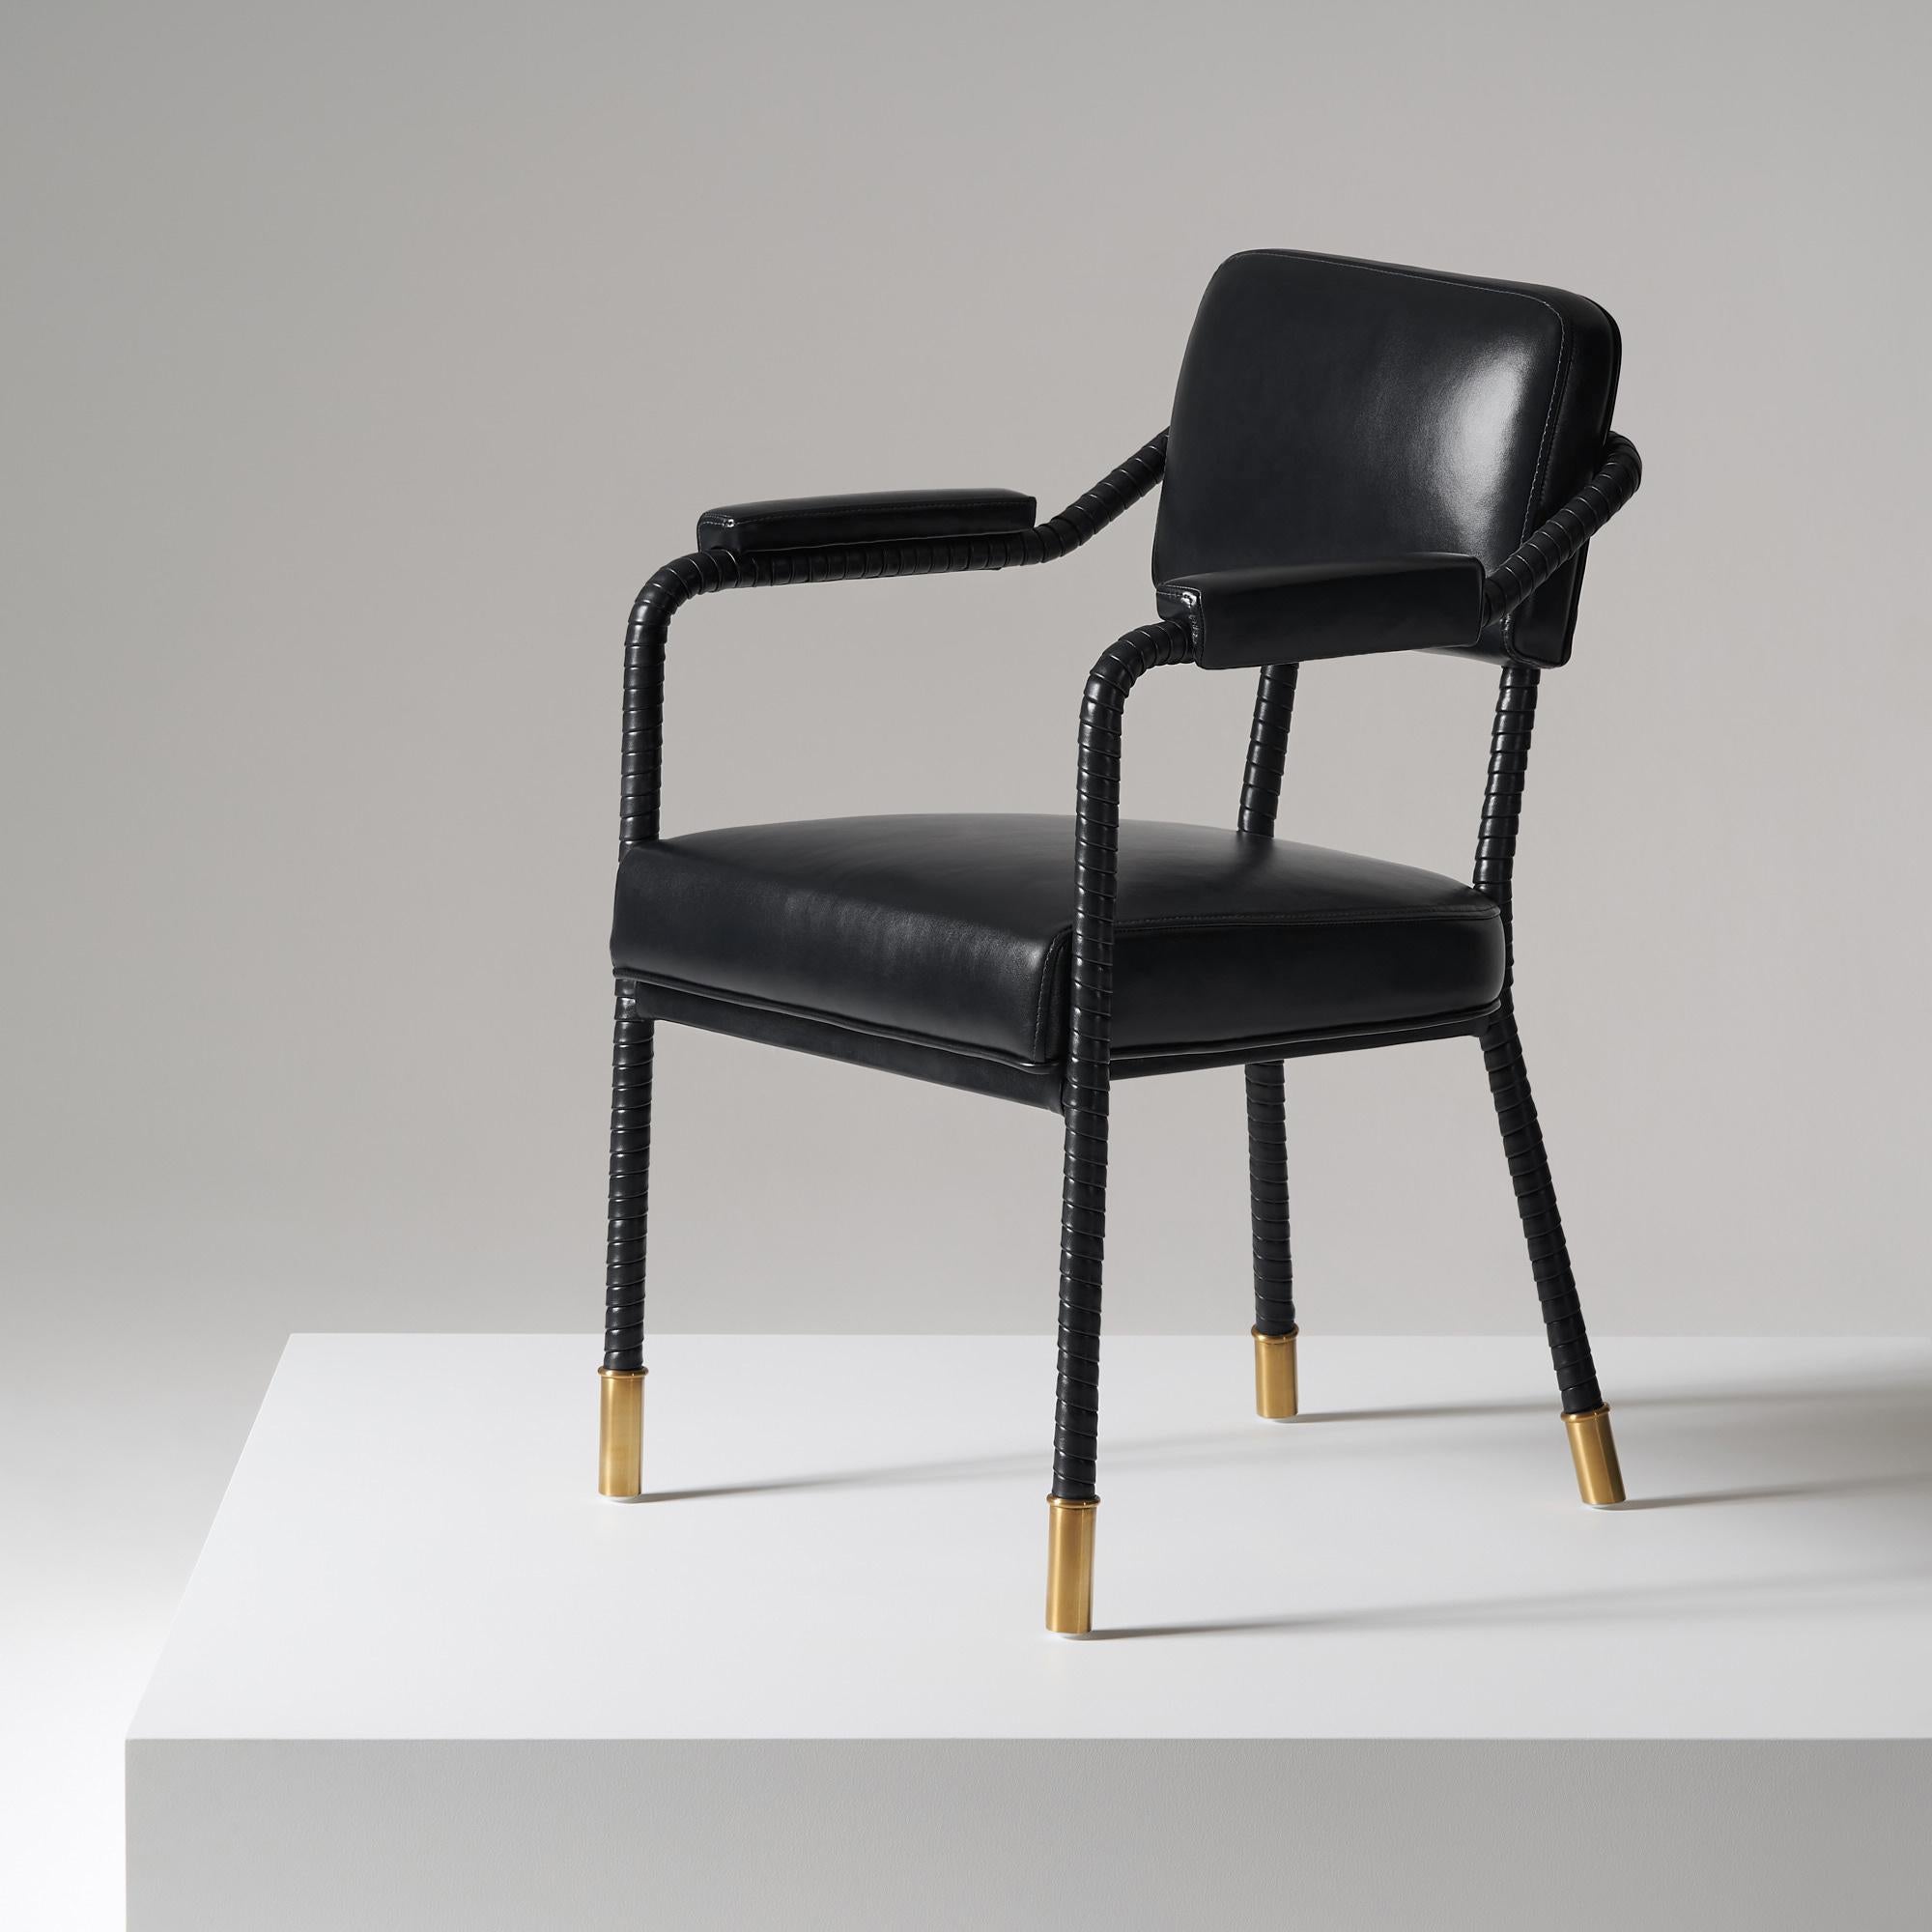 And objects, ein von Martin Brudnizki und Nick Jeanes gegründetes Studio für Produktdesign mit Sitz in London.

Der Easton-Esszimmerstuhl ist ein Unikat aus Edelstahl und italienischem Leder. Handgewickeltes Leder umhüllt einen Rohrrahmen, der mit